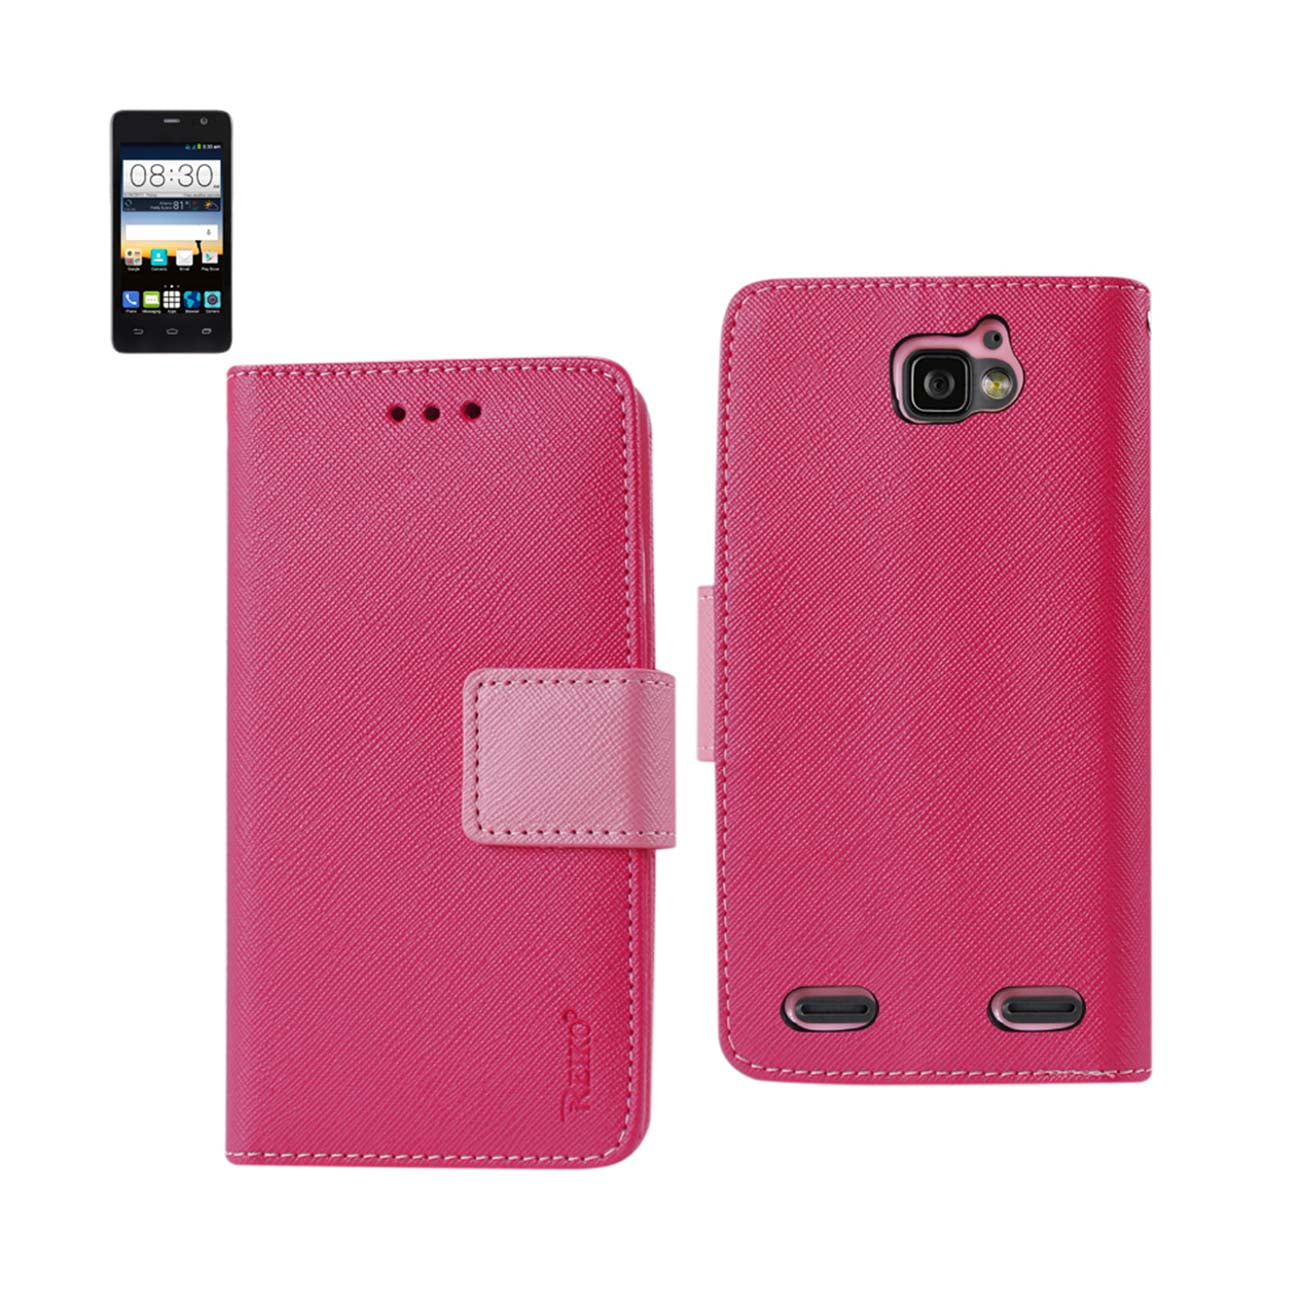 Zte Sonata 2 3-in-1 Wallet Case In Hot Pink - 0 - 0